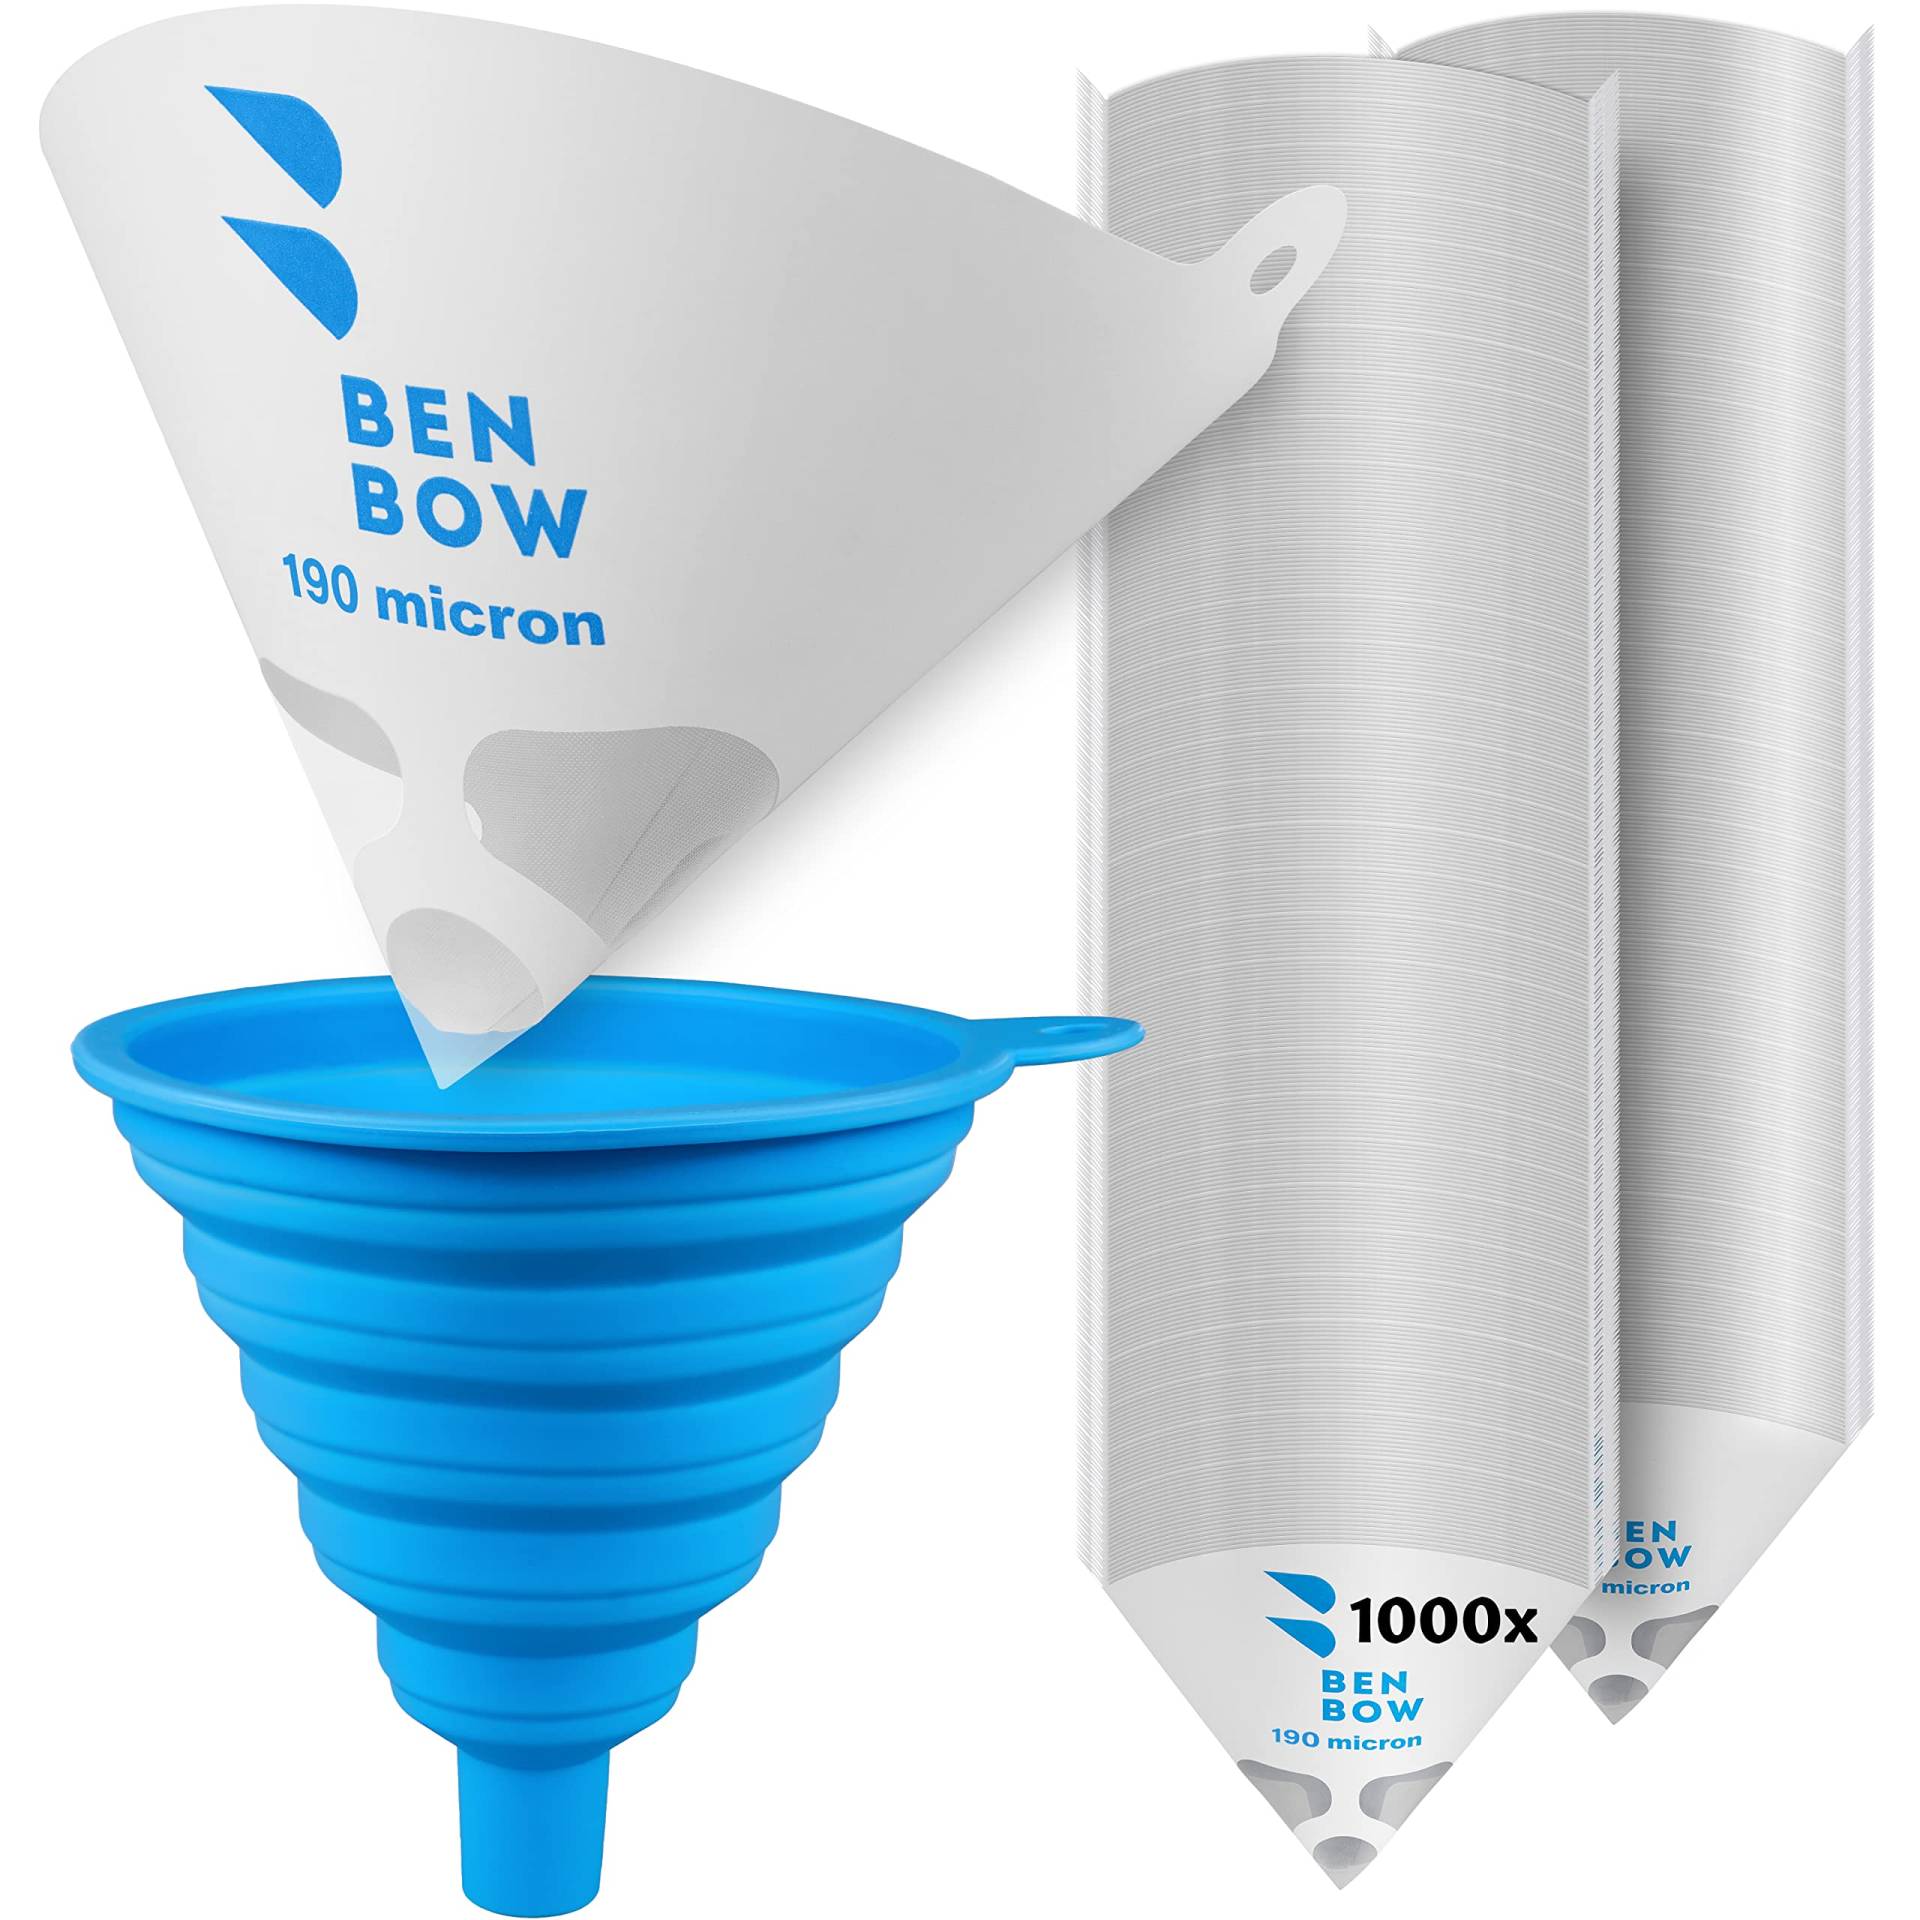 BenBow Lacksieb 190µ x 250 Stück - Einweg-Papierfilter mit Nylongewebe und praktischer Silikontrichter - zum Filtern von Lacken und Farben vor Verunreinigungen von BenBow